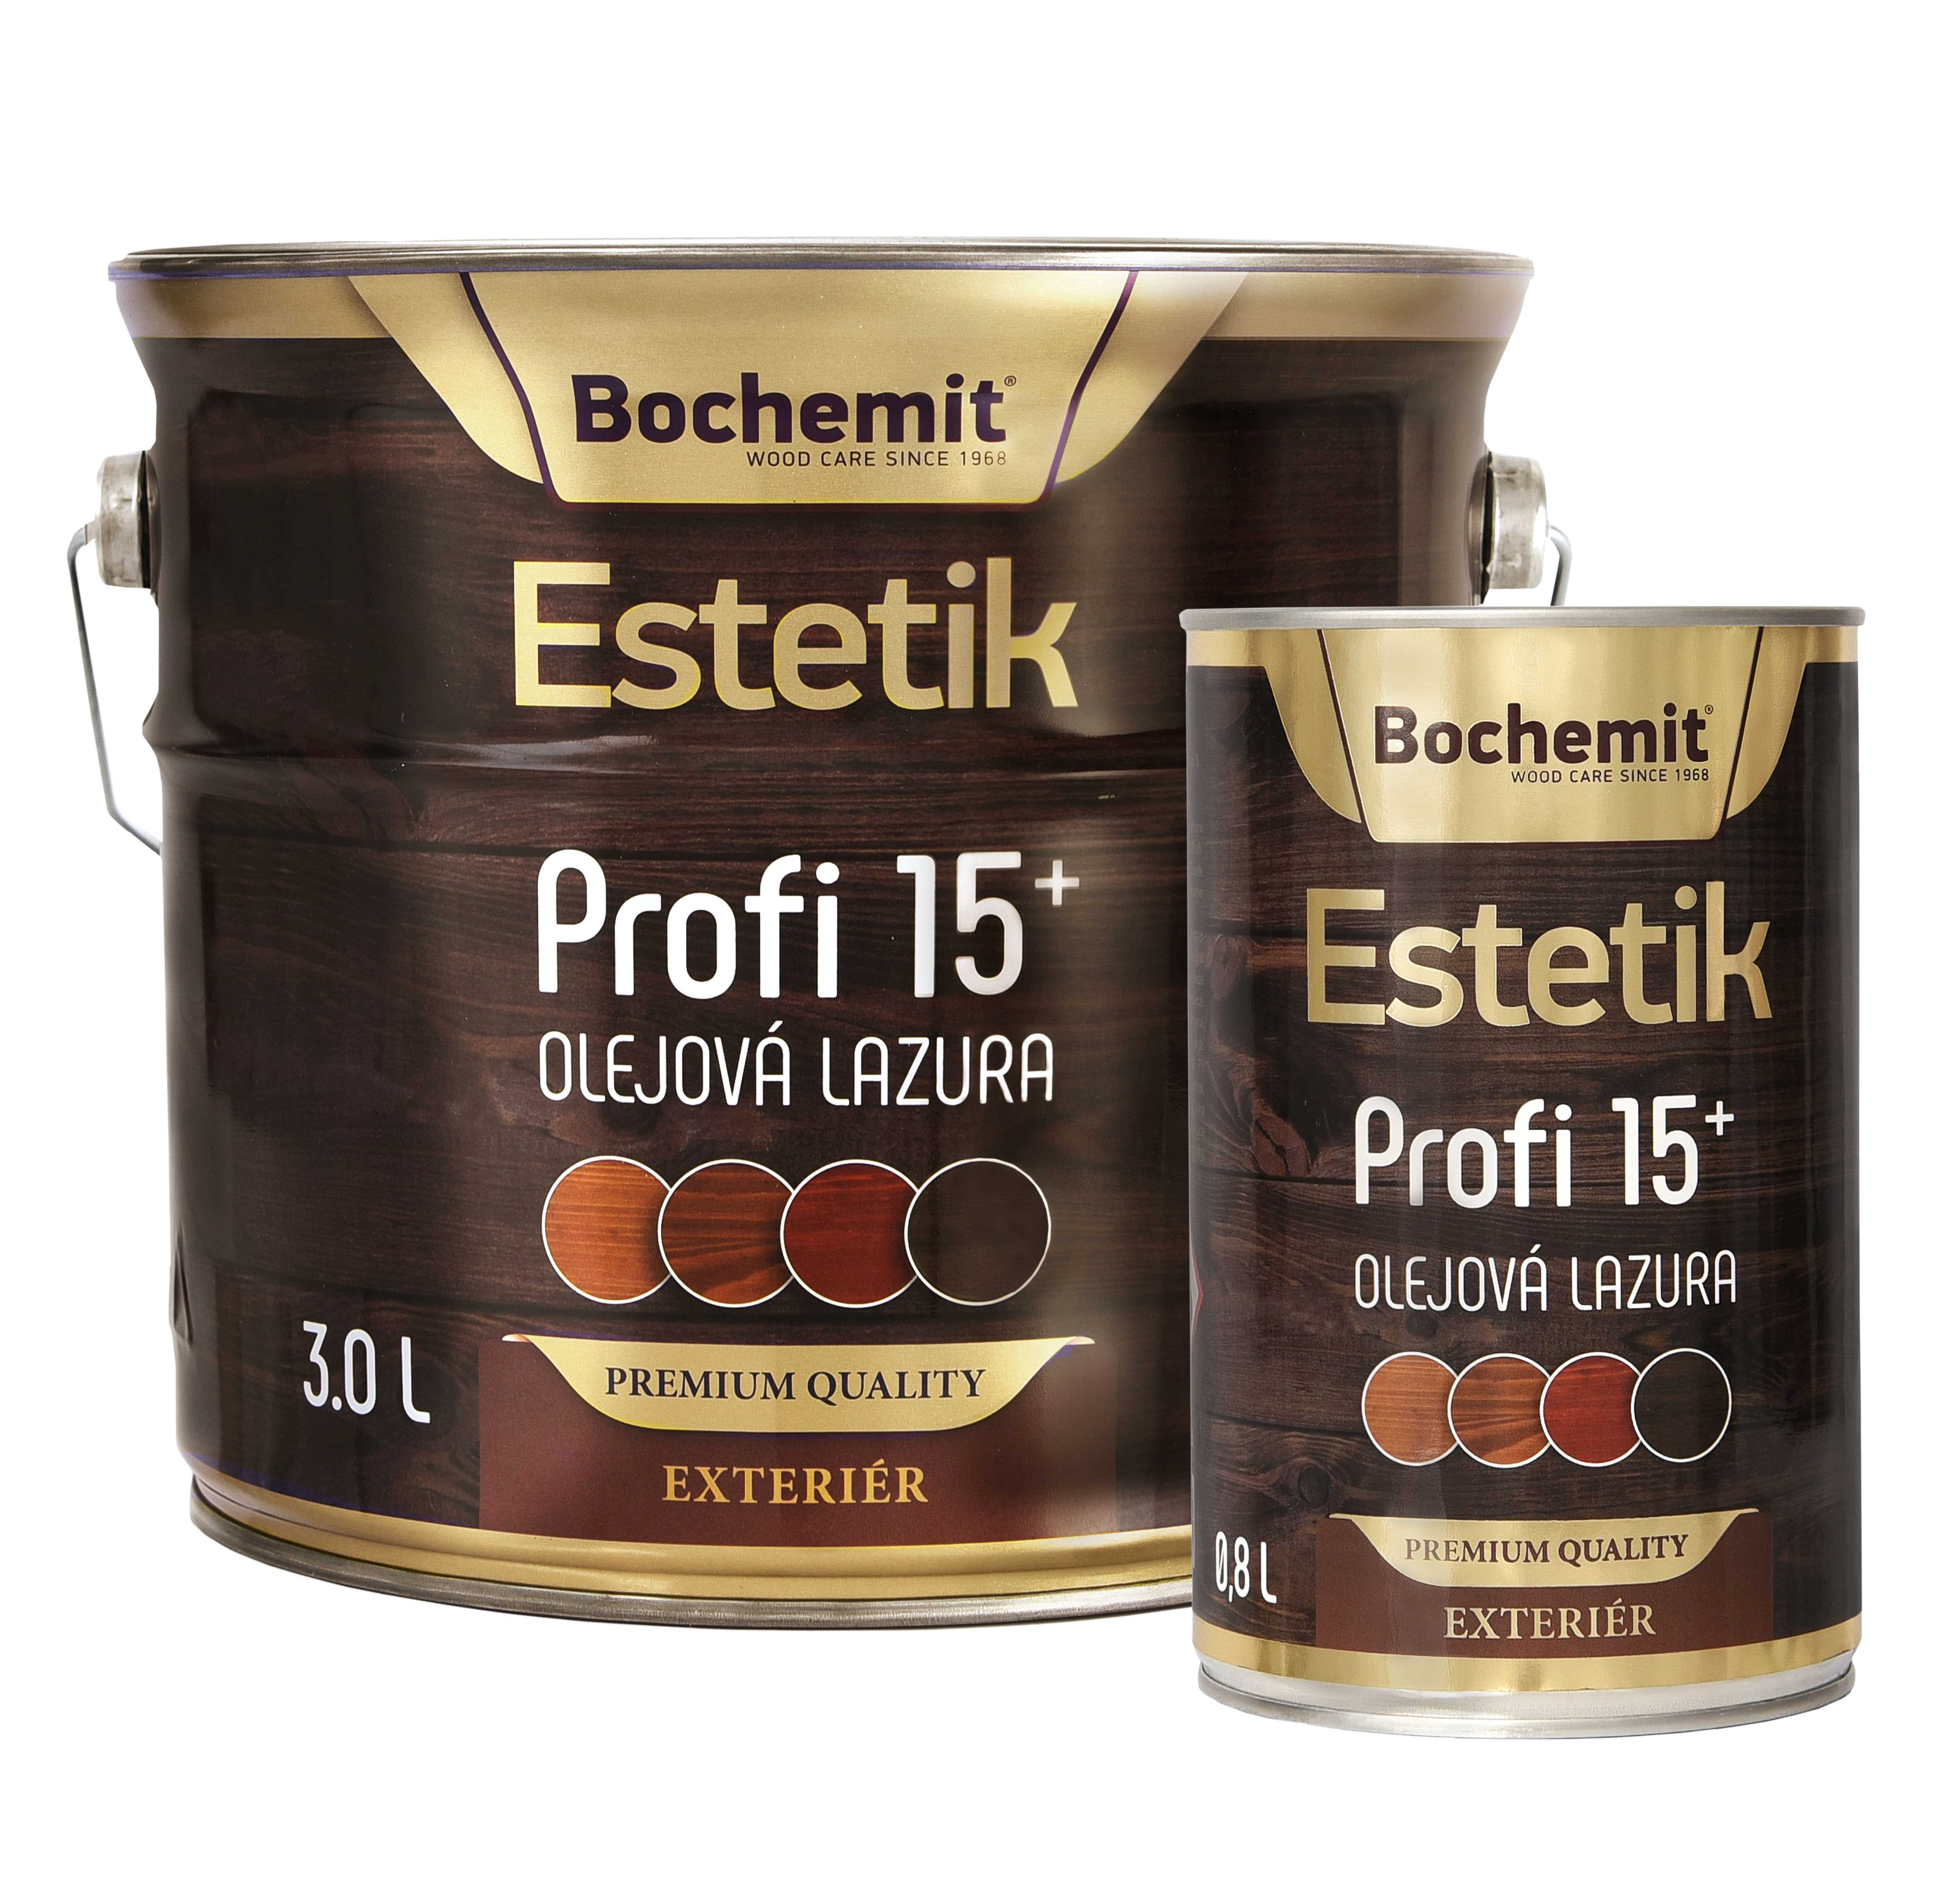 Ważne zmiany w portfolio produktów Bochemit